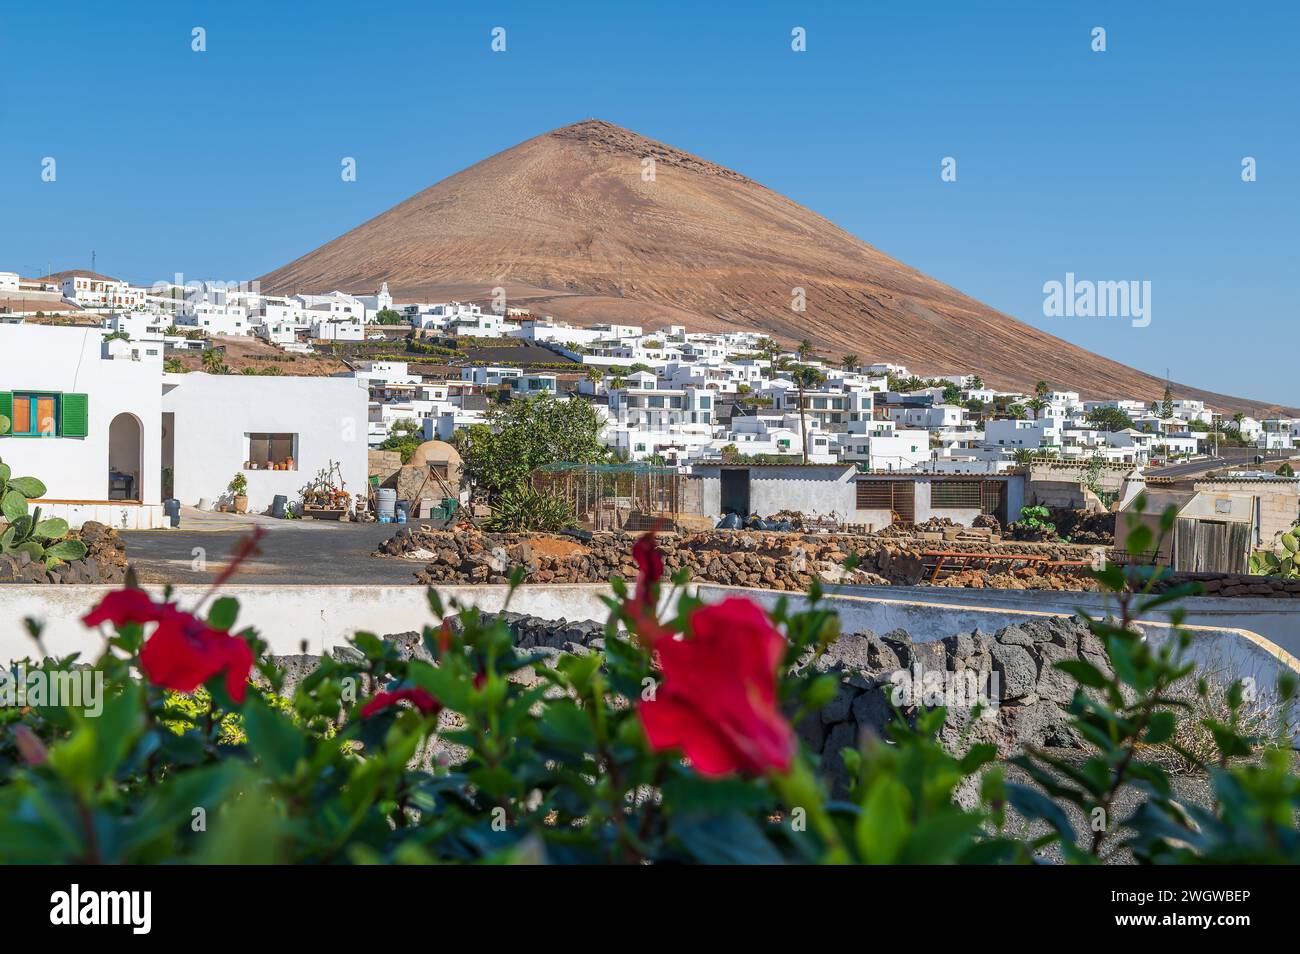 Bezaubernde Aussicht auf das Dorf Tias vor der berühmten Montaña Blanca auf Lanzarote, die das Wesen des kanarischen Lebens und der vulkanischen Landschaften einfängt. Stockfoto